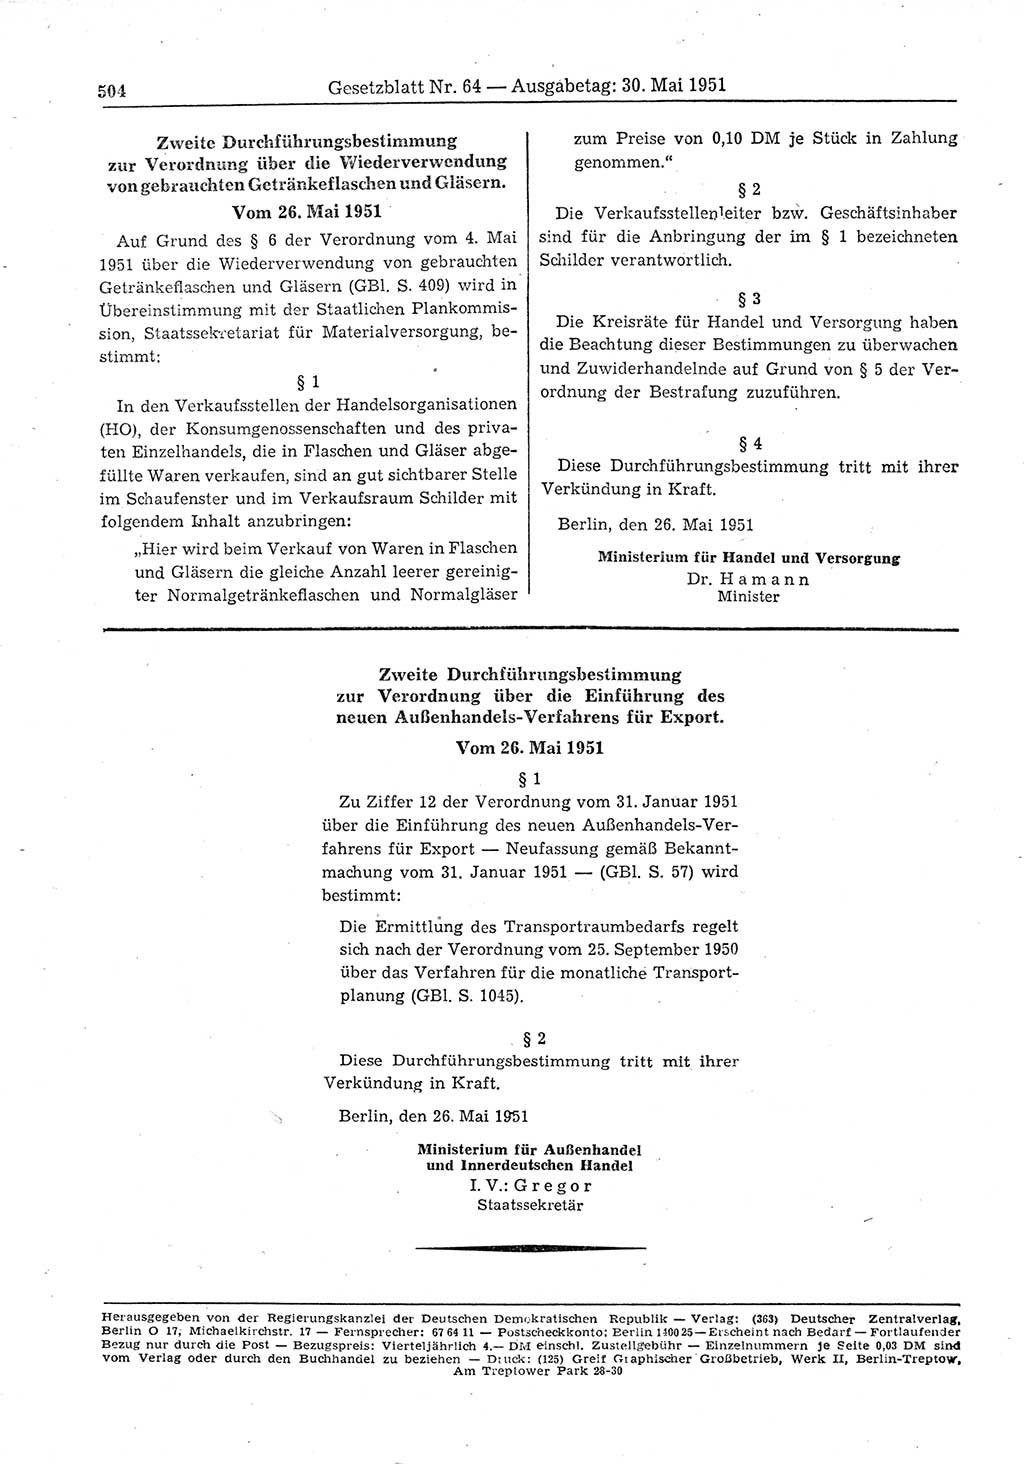 Gesetzblatt (GBl.) der Deutschen Demokratischen Republik (DDR) 1951, Seite 504 (GBl. DDR 1951, S. 504)